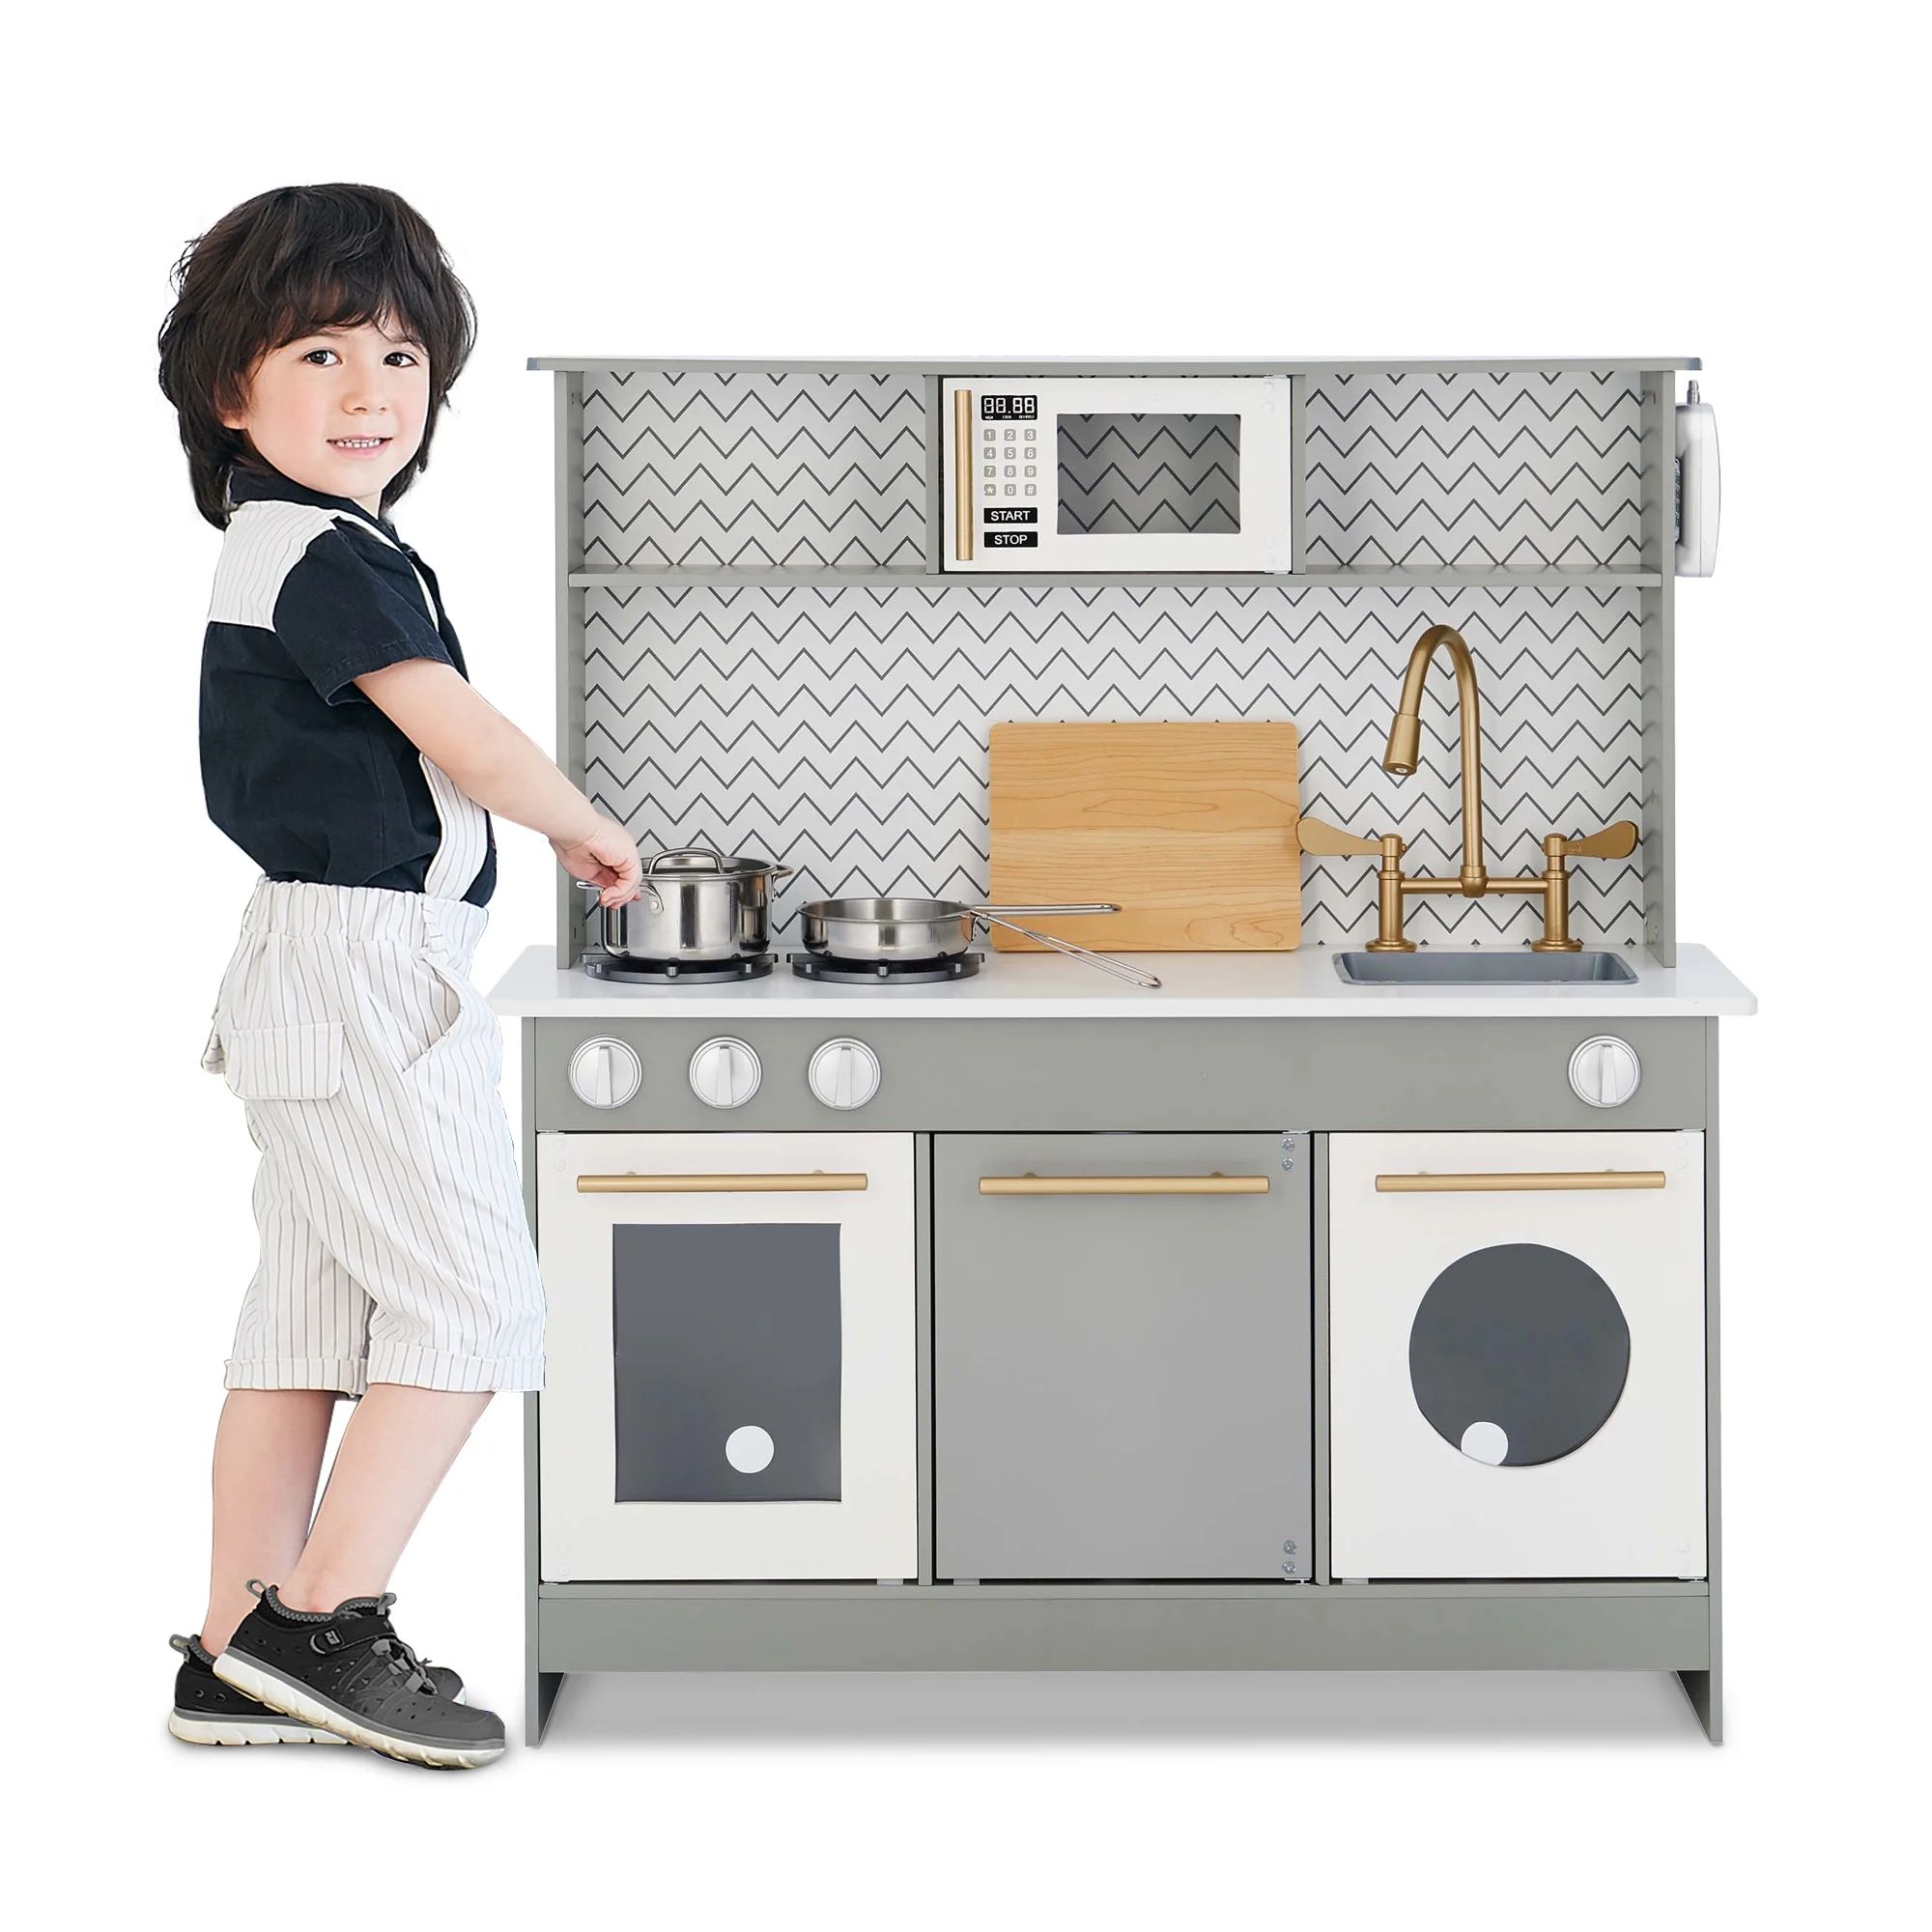 Teamson Kids Little Chef Berlin Modern Play Kitchen Set with 6 Accessories, Gray/White - Walmart.... | Walmart (US)